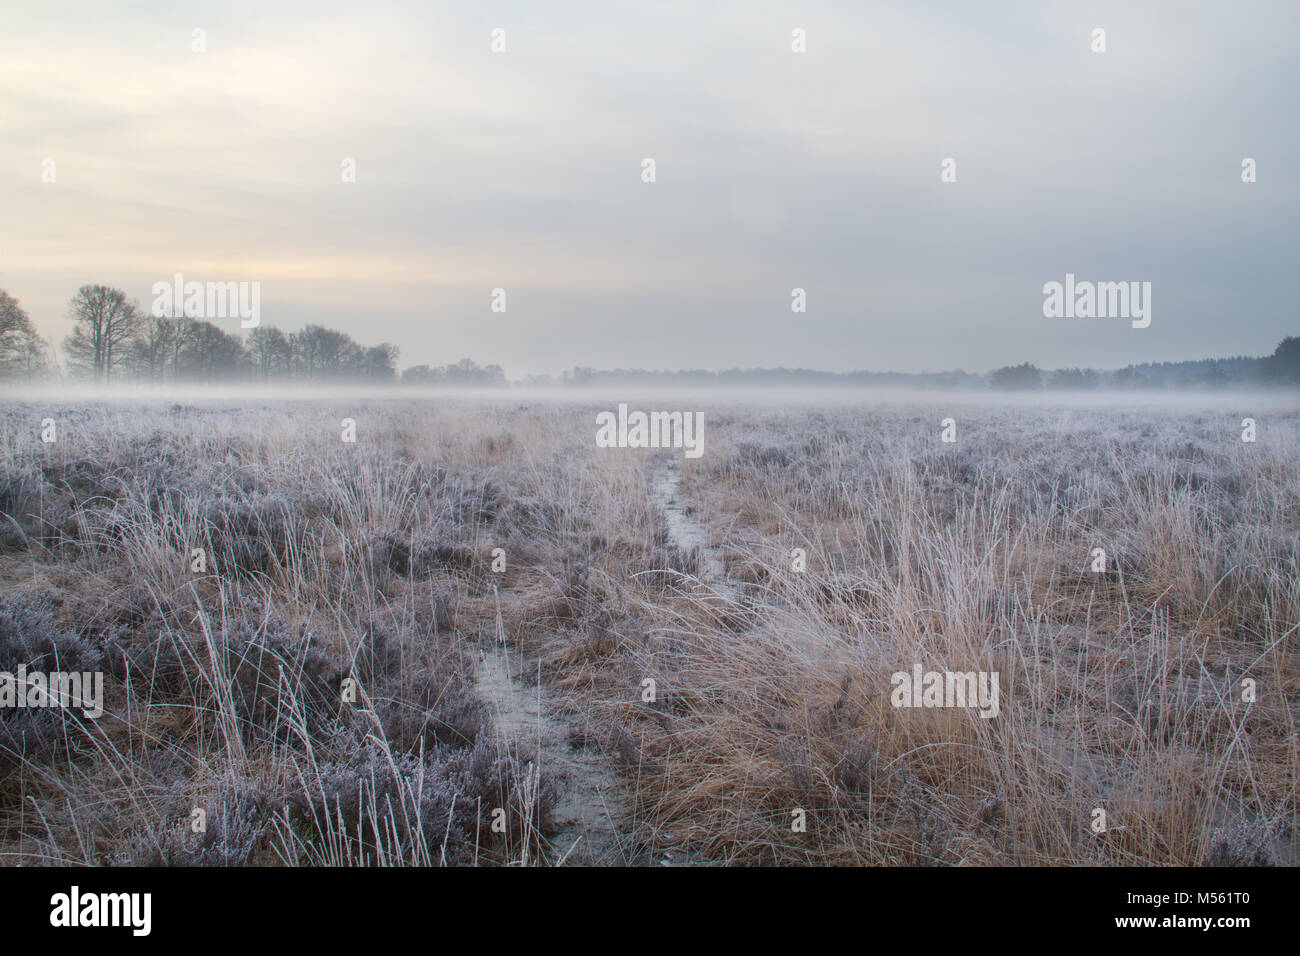 Warenkorb Track durch Heide, am frühen Morgen mit Raureif und Nebel Stockfoto